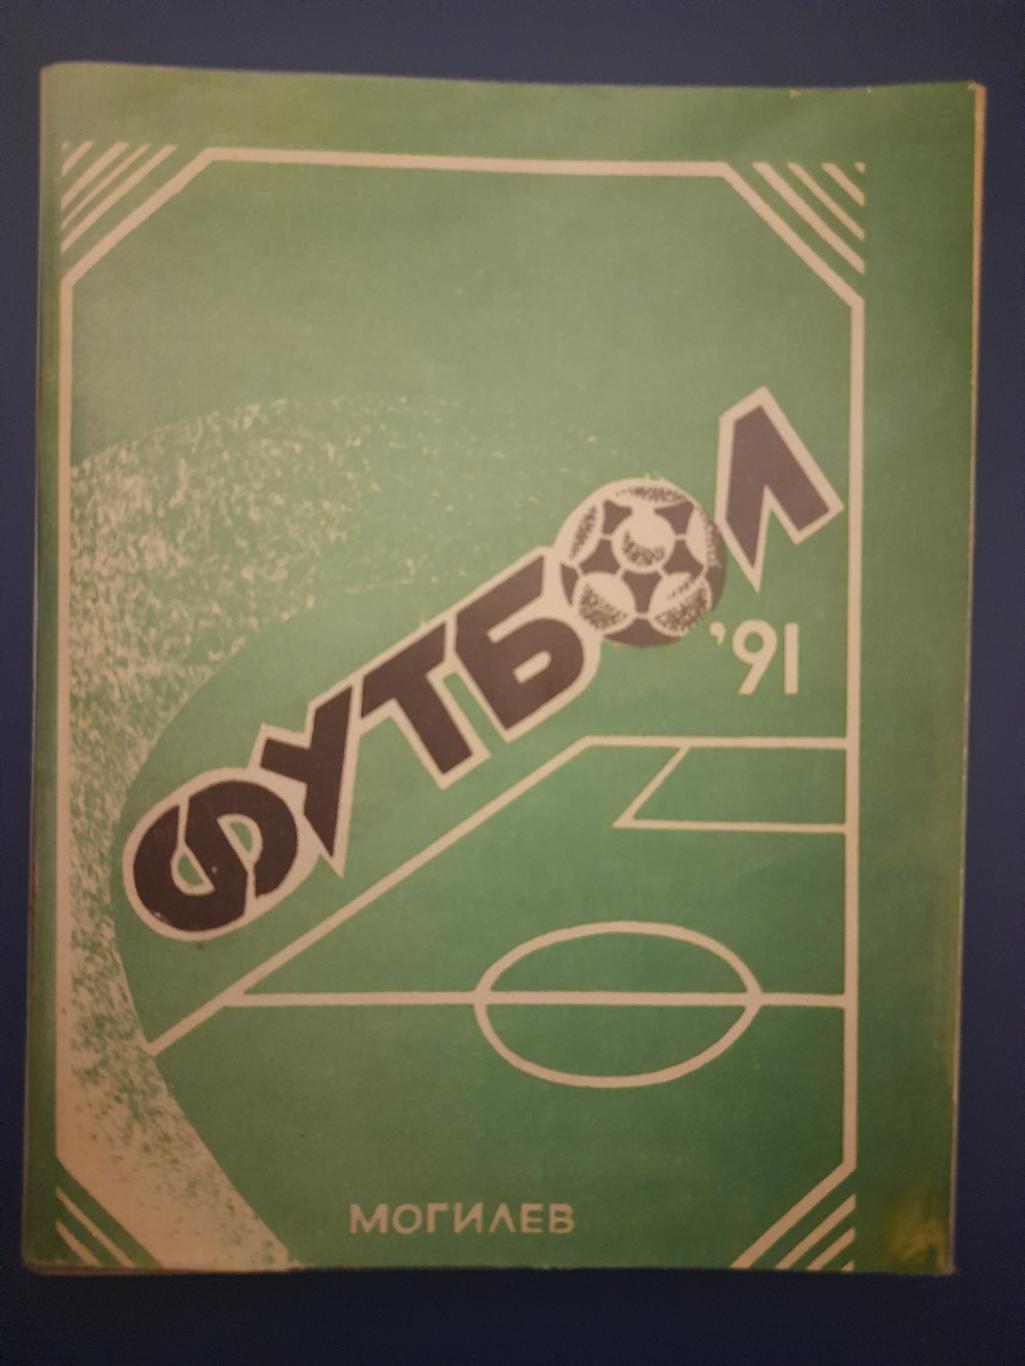 календарь-справочник,Футбол 1991, Могилев.